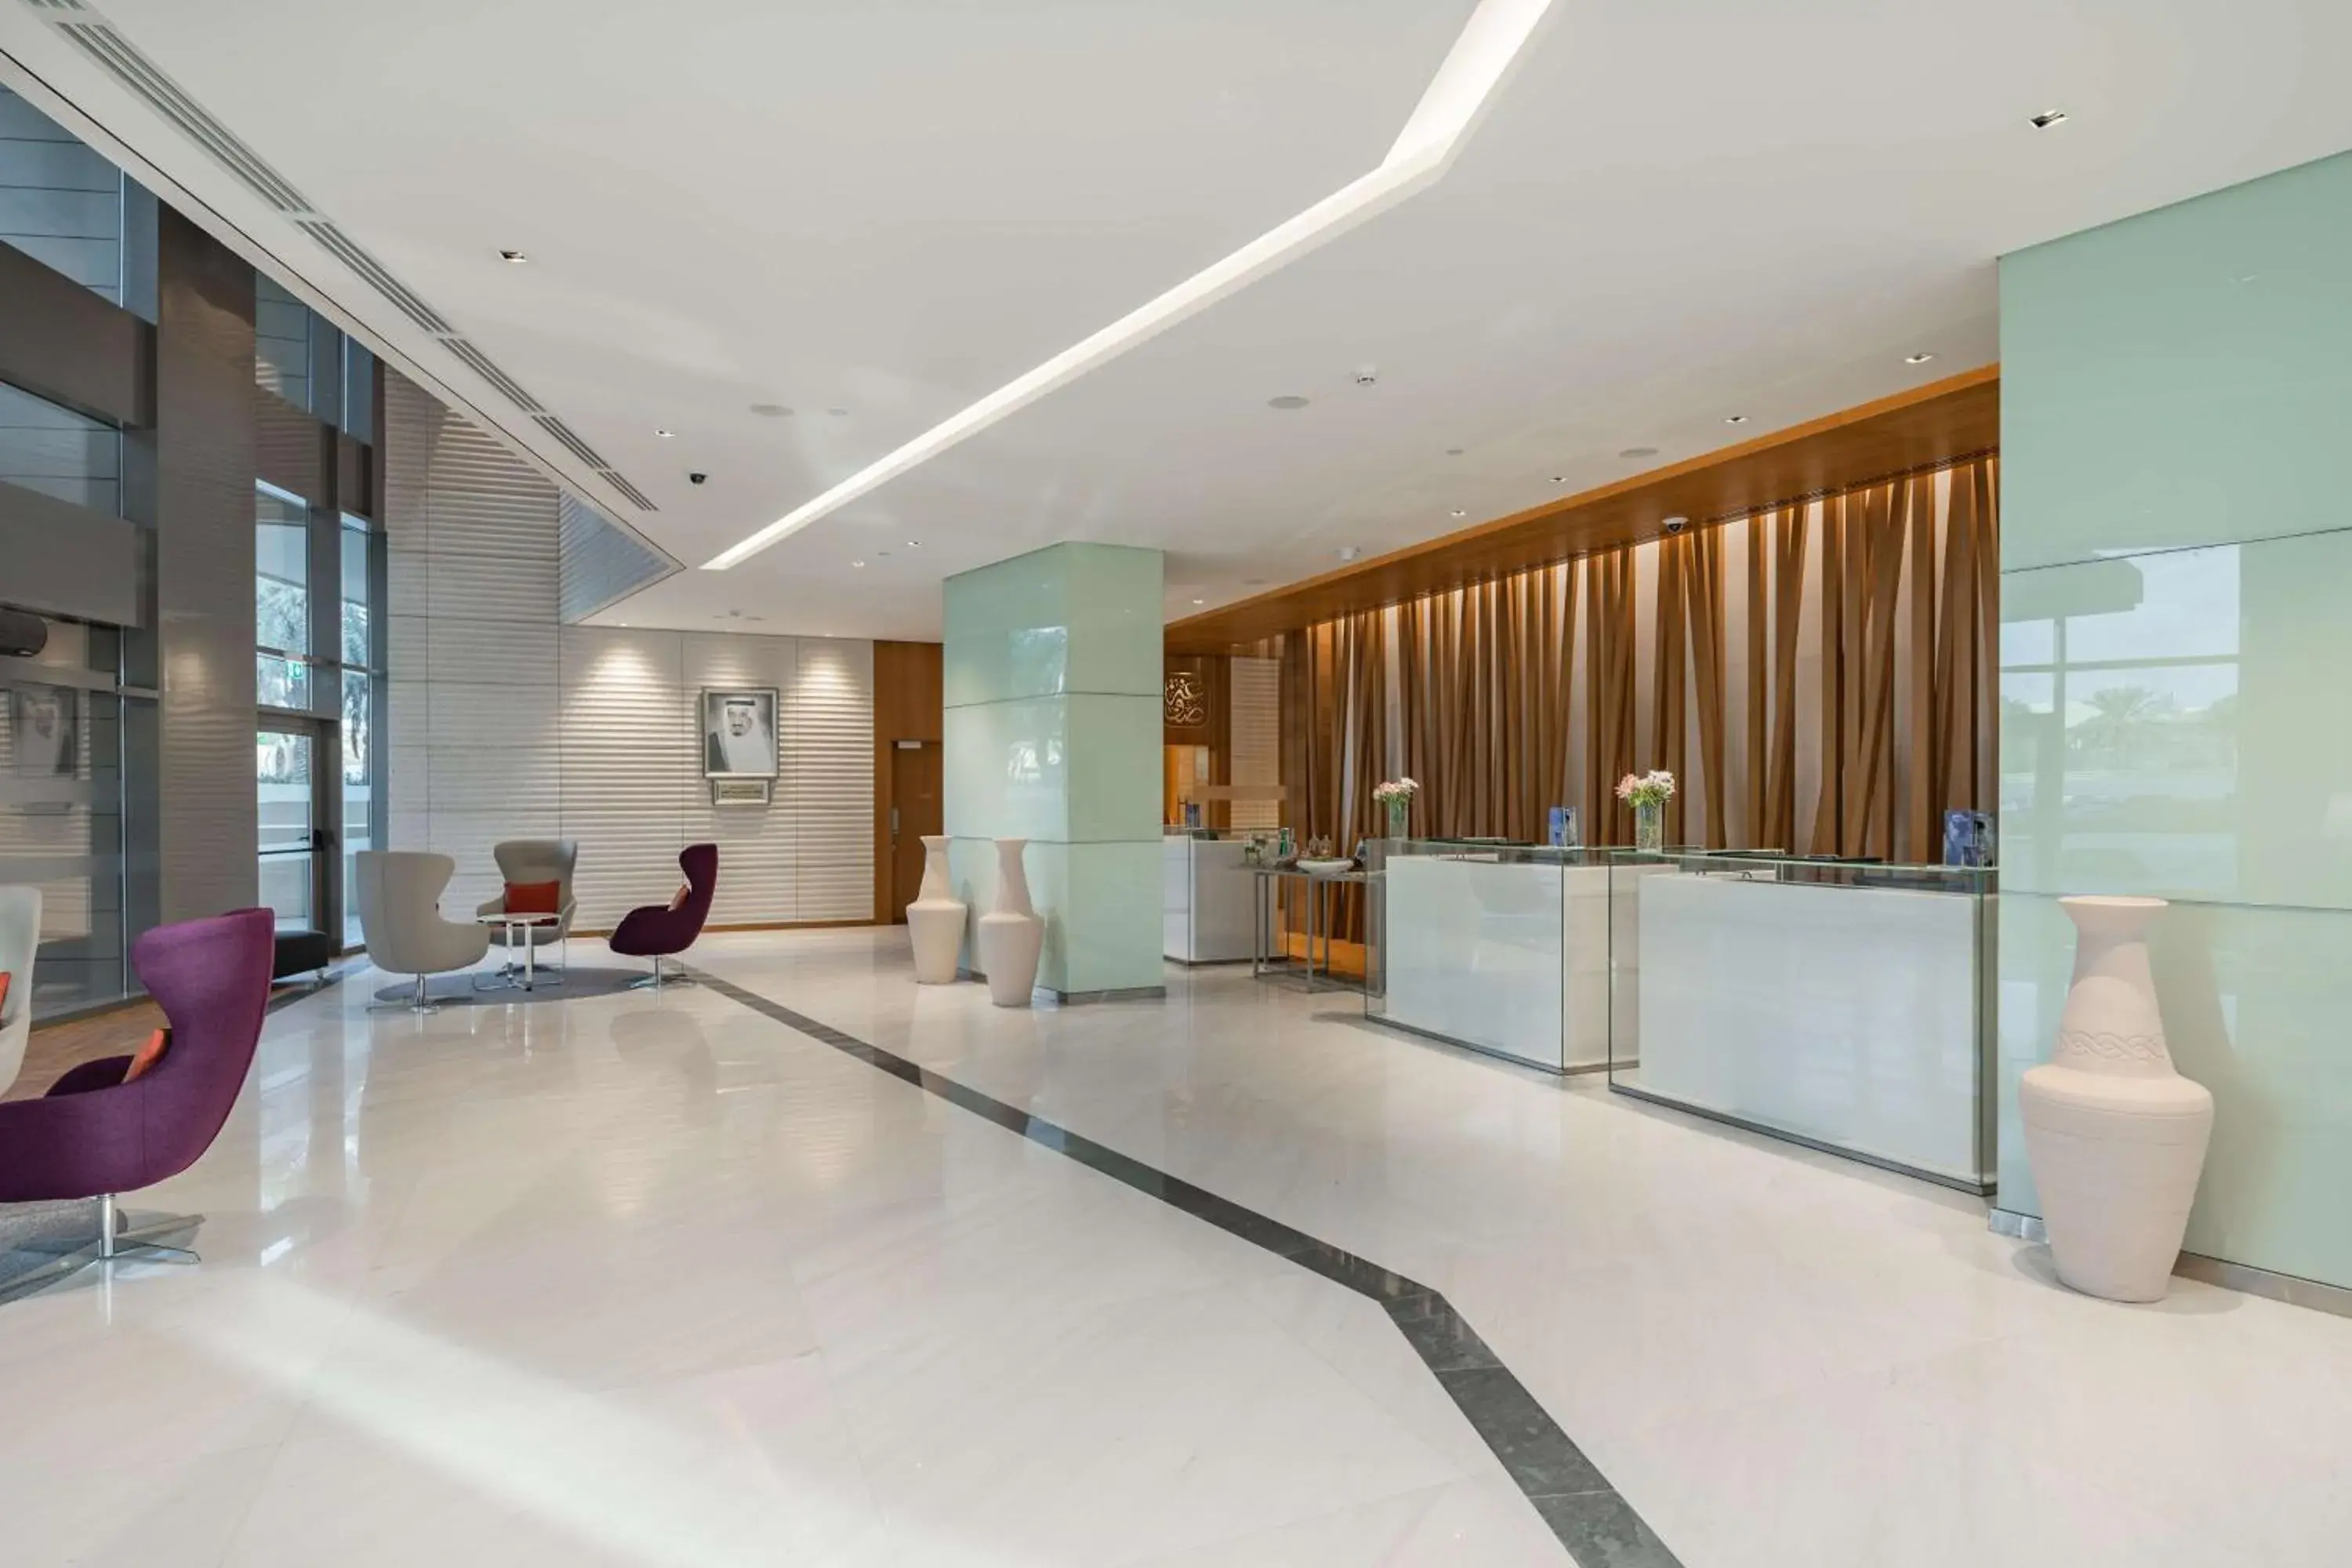 Lobby or reception, Lobby/Reception in Radisson Blu Hotel & Residence, Riyadh Diplomatic Quarter